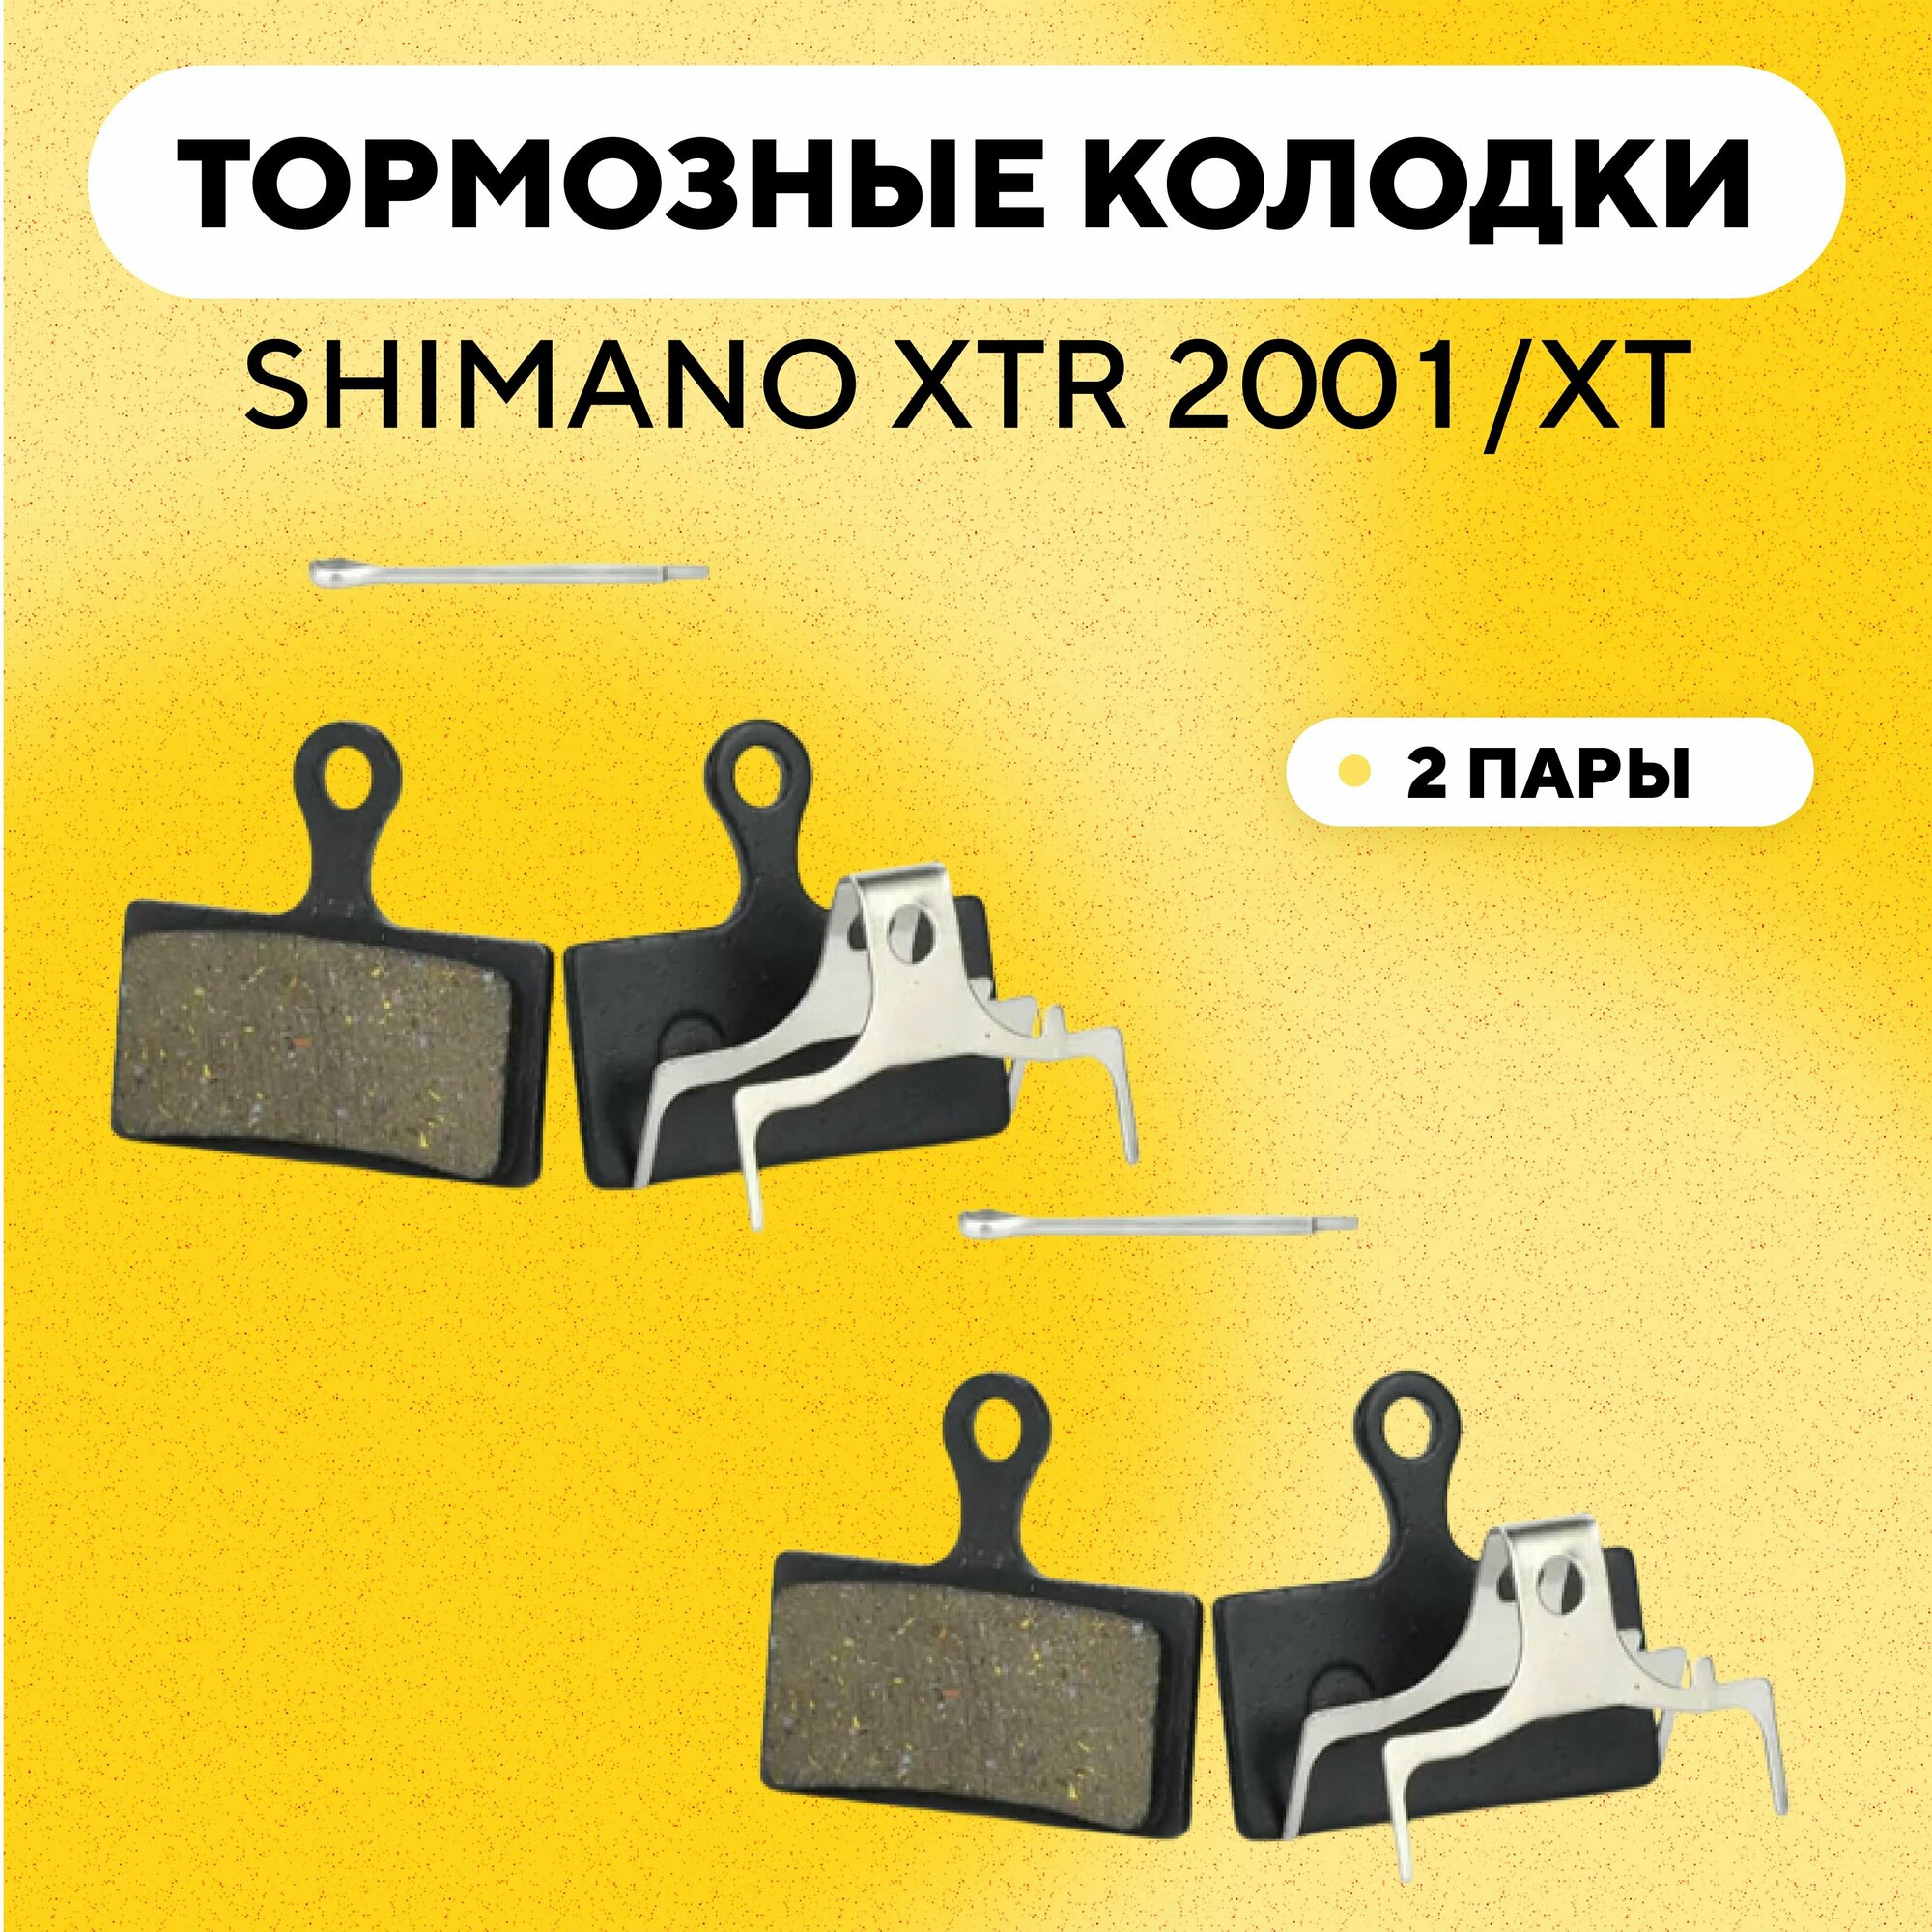 Тормозные колодки для тормозов SHIMANO XTR 2001/XTR/XT/DEORE/SLX электросамоката, велосипеда (G-002, ширина 32 мм, комплект, 2 пары)